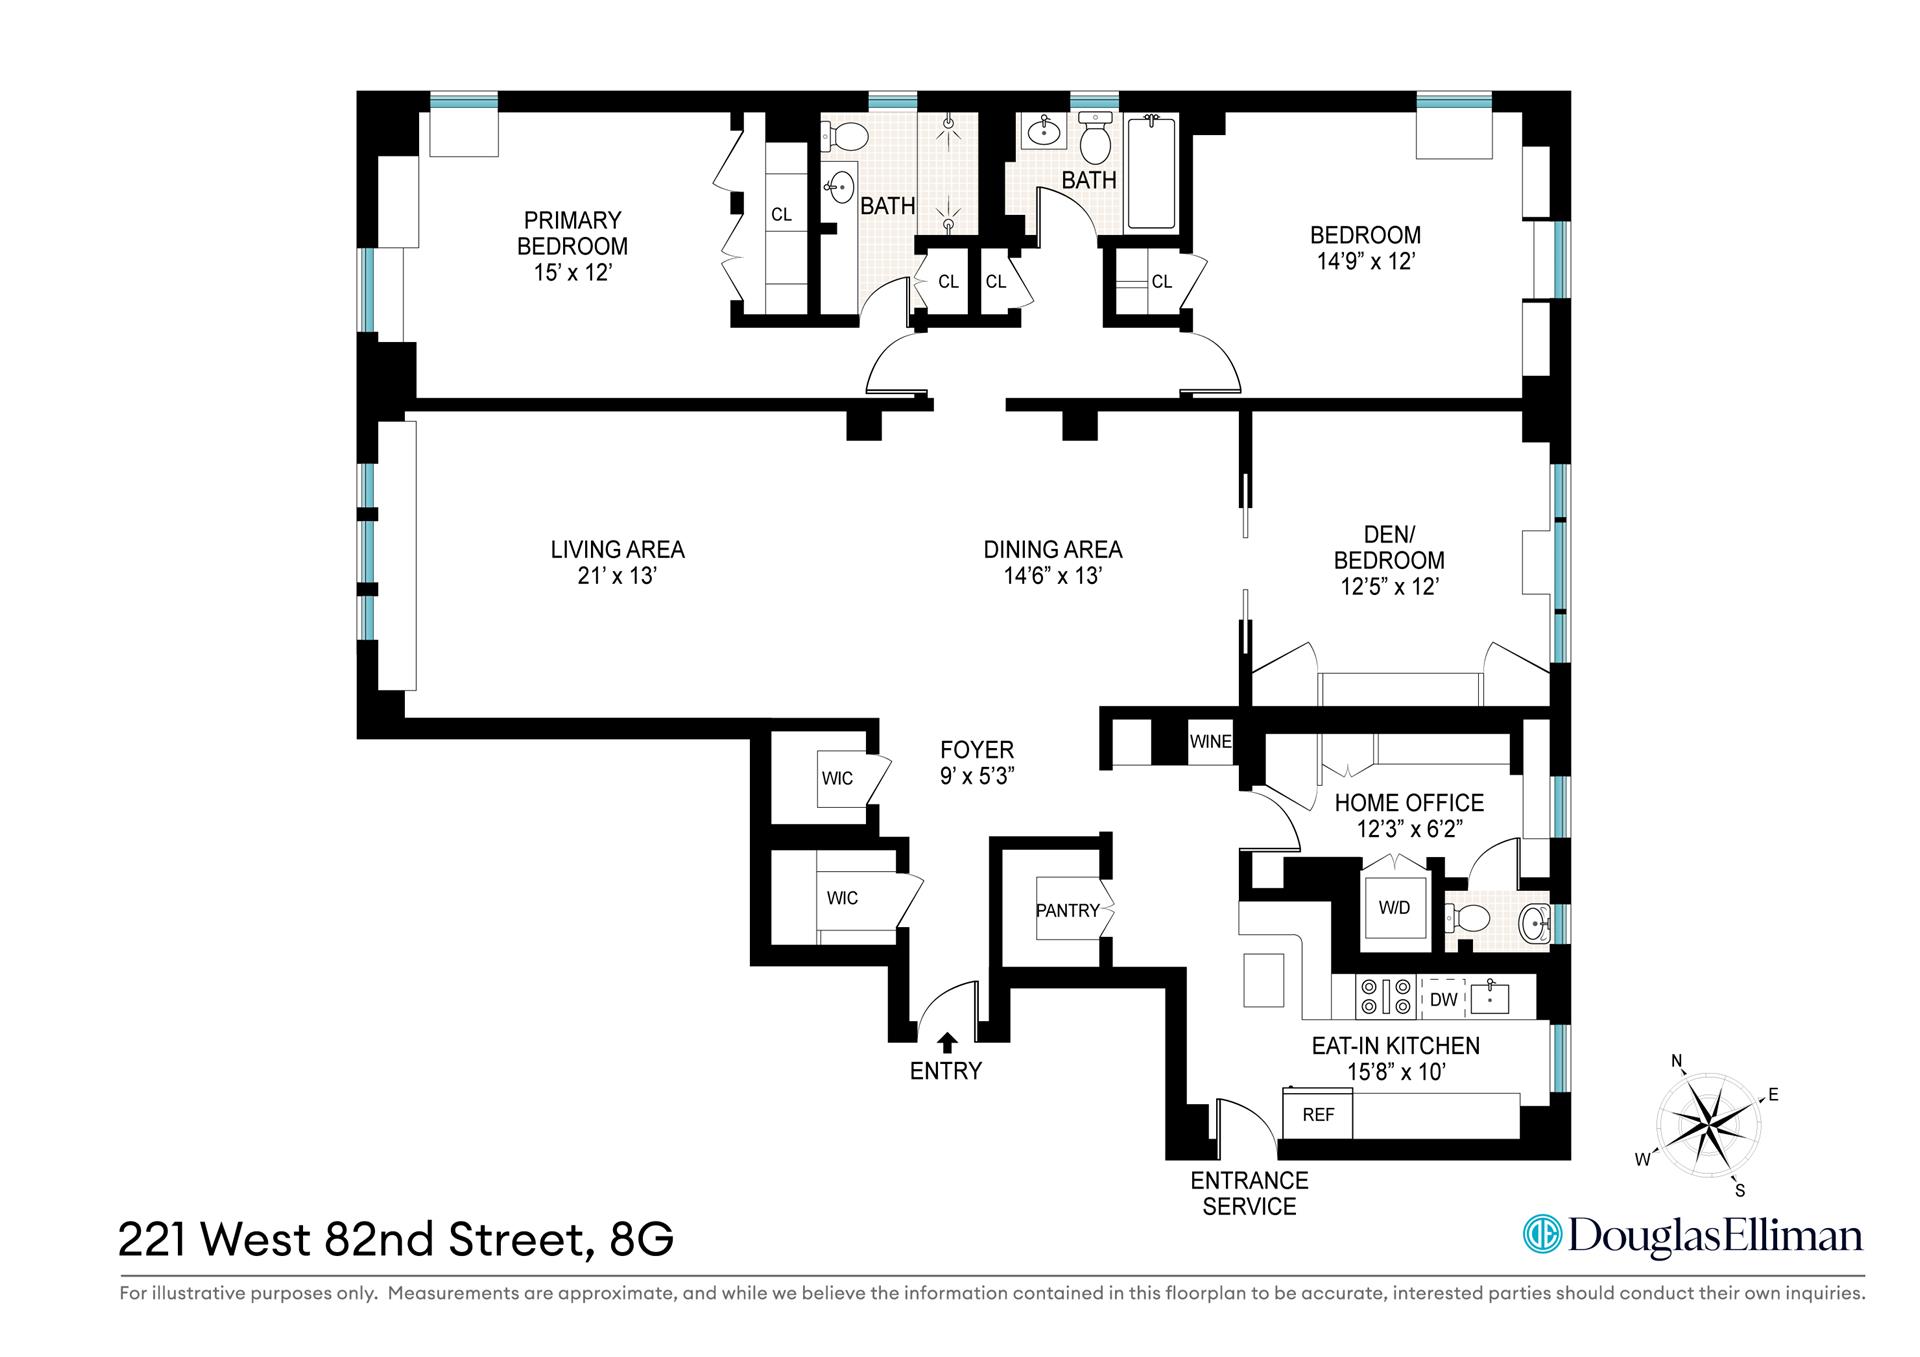 Floorplan for 221 West 82nd Street, 8G